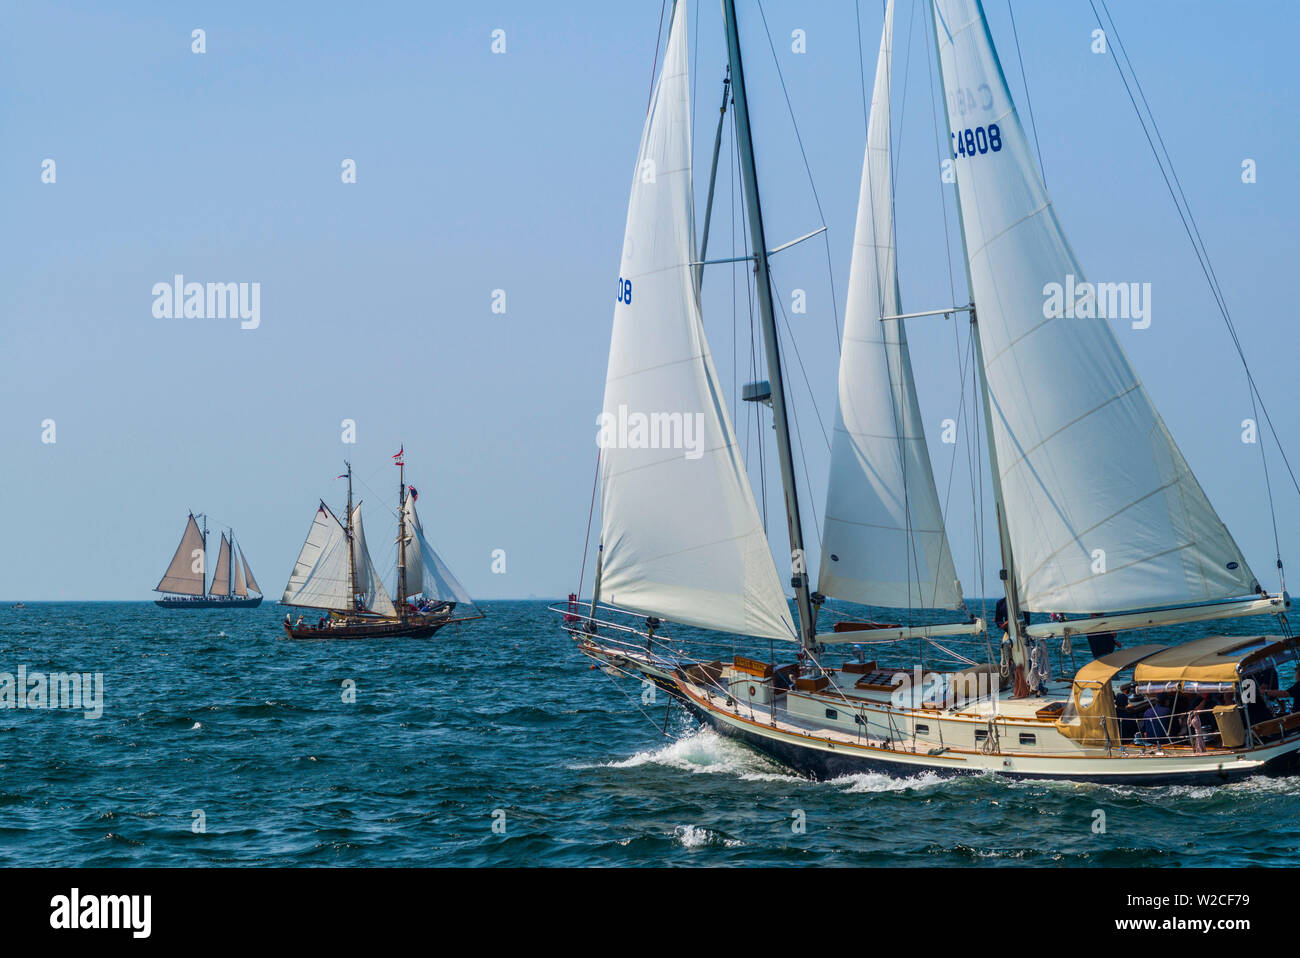 USA, Massachusetts, Cape Ann, Gloucester, America's Oldest Seaport, Annual Schooner Festival Stock Photo